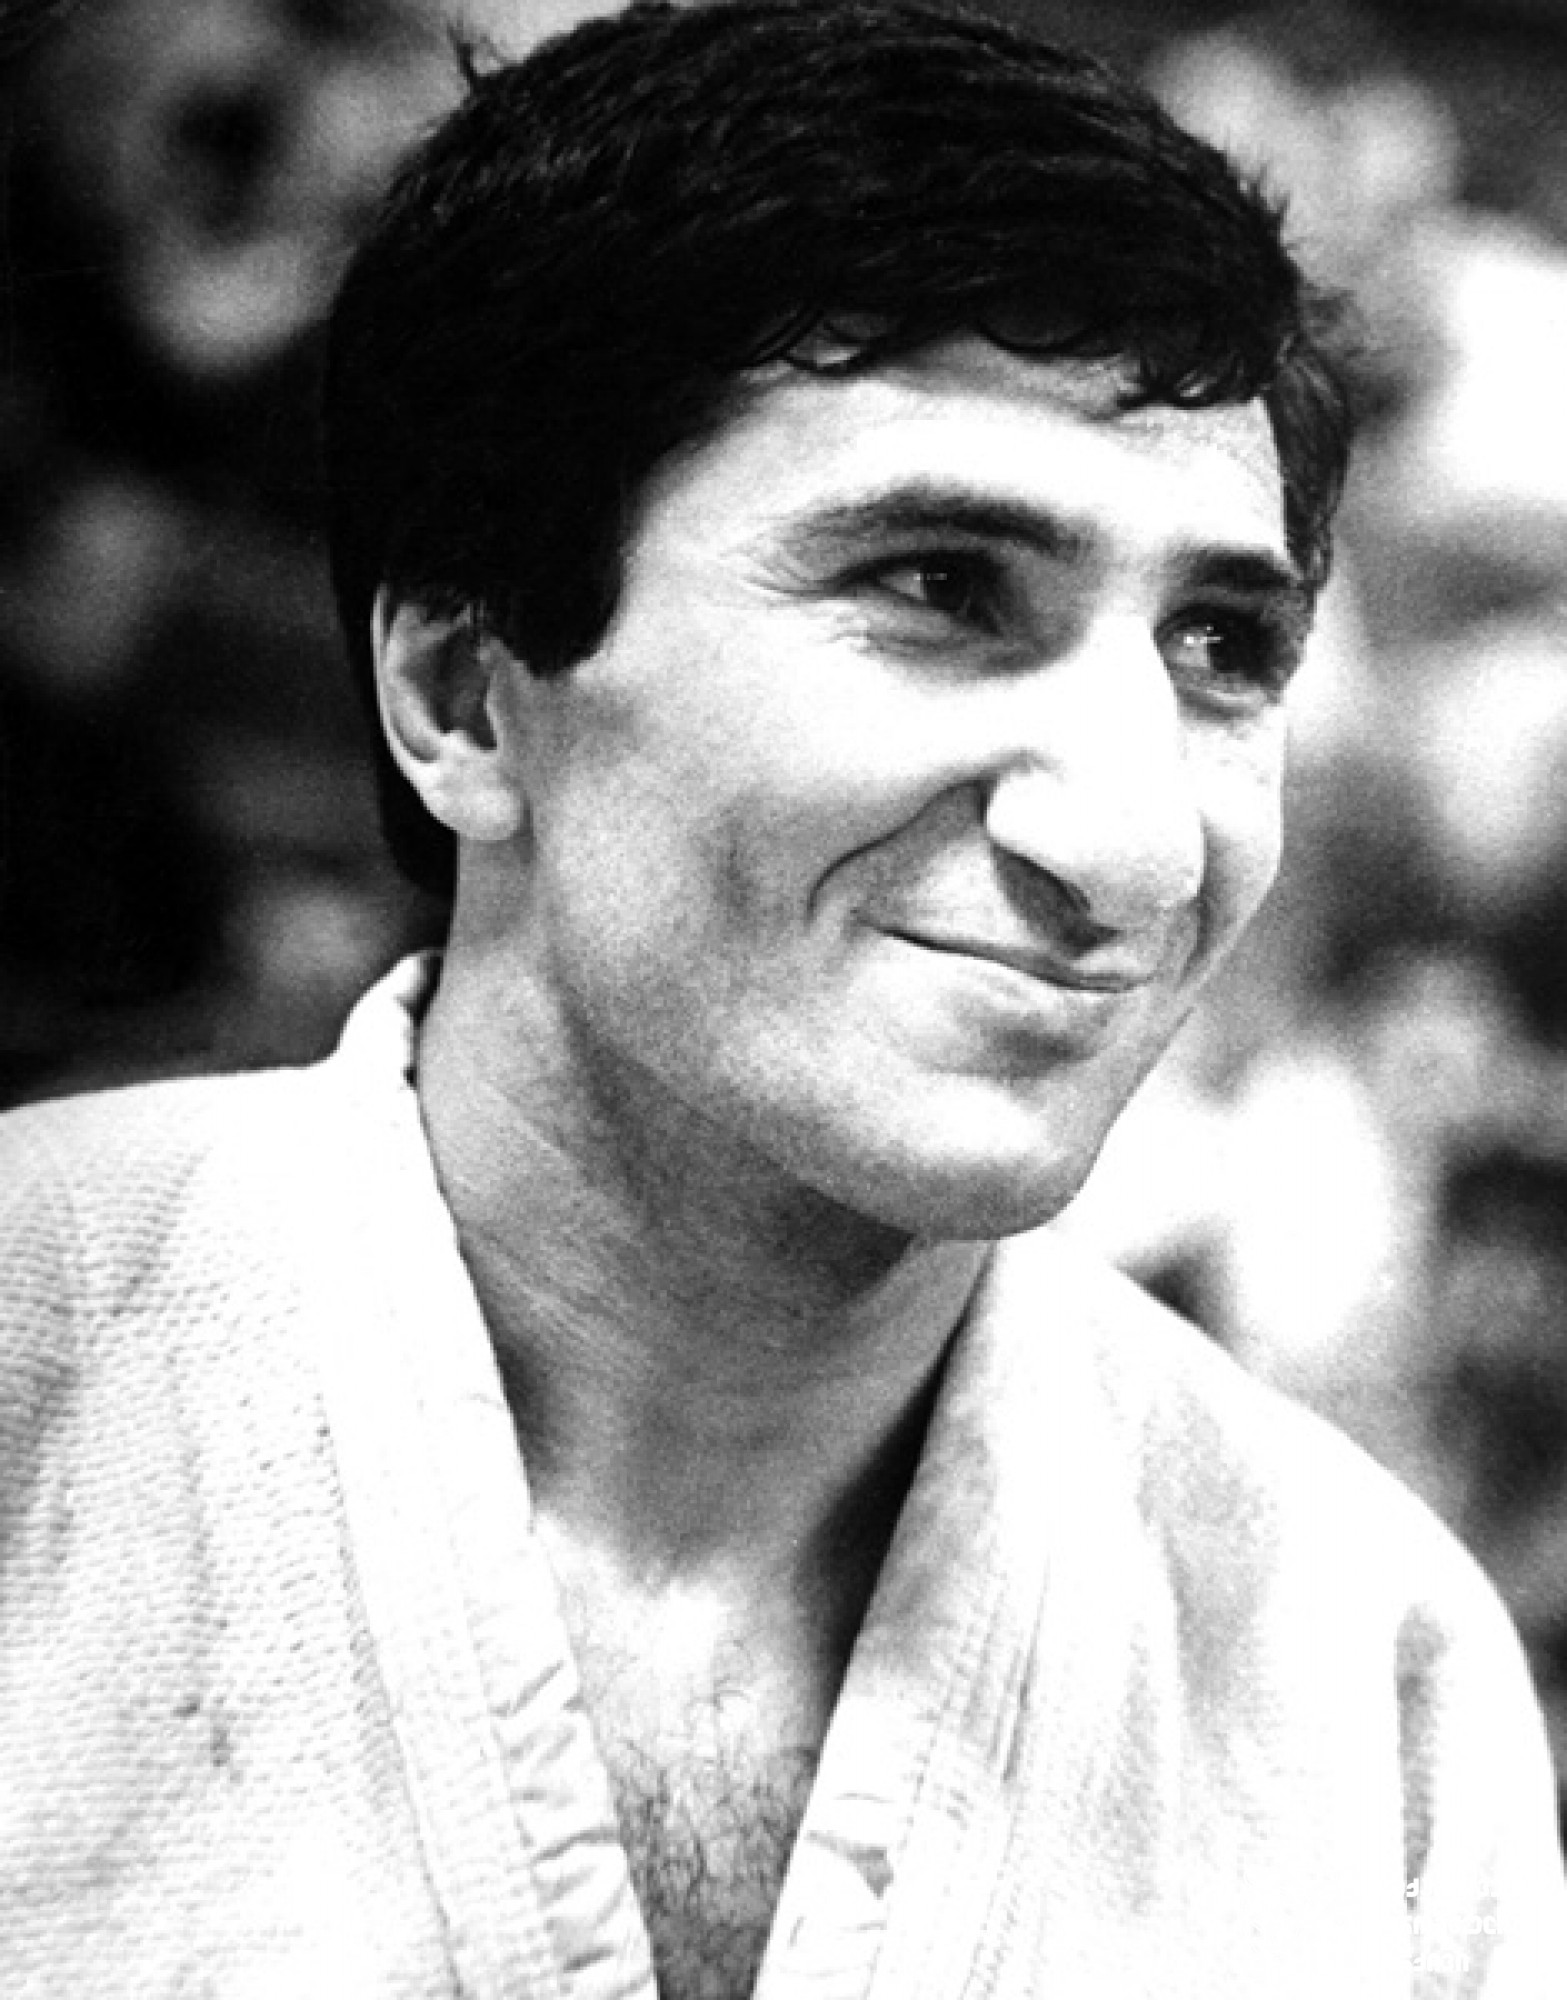 გიორგი თენაძე. <br>
XXIV ოლიმპიური თამაშების მესამე პრიზიორი ძიუდოში (1988 წელი, სეული). <br>
ფოტო საქართველოს ეროვნული ოლიმპიური კომიტეტის ვებგვერდიდან. <br>
Giorgi Tenadze. <br>
Third-prize winner of the XXIV Olympic Games in Judo (1988, Seoul). <br>
Photo from the web-site of the Georgian National Olympic Committee.